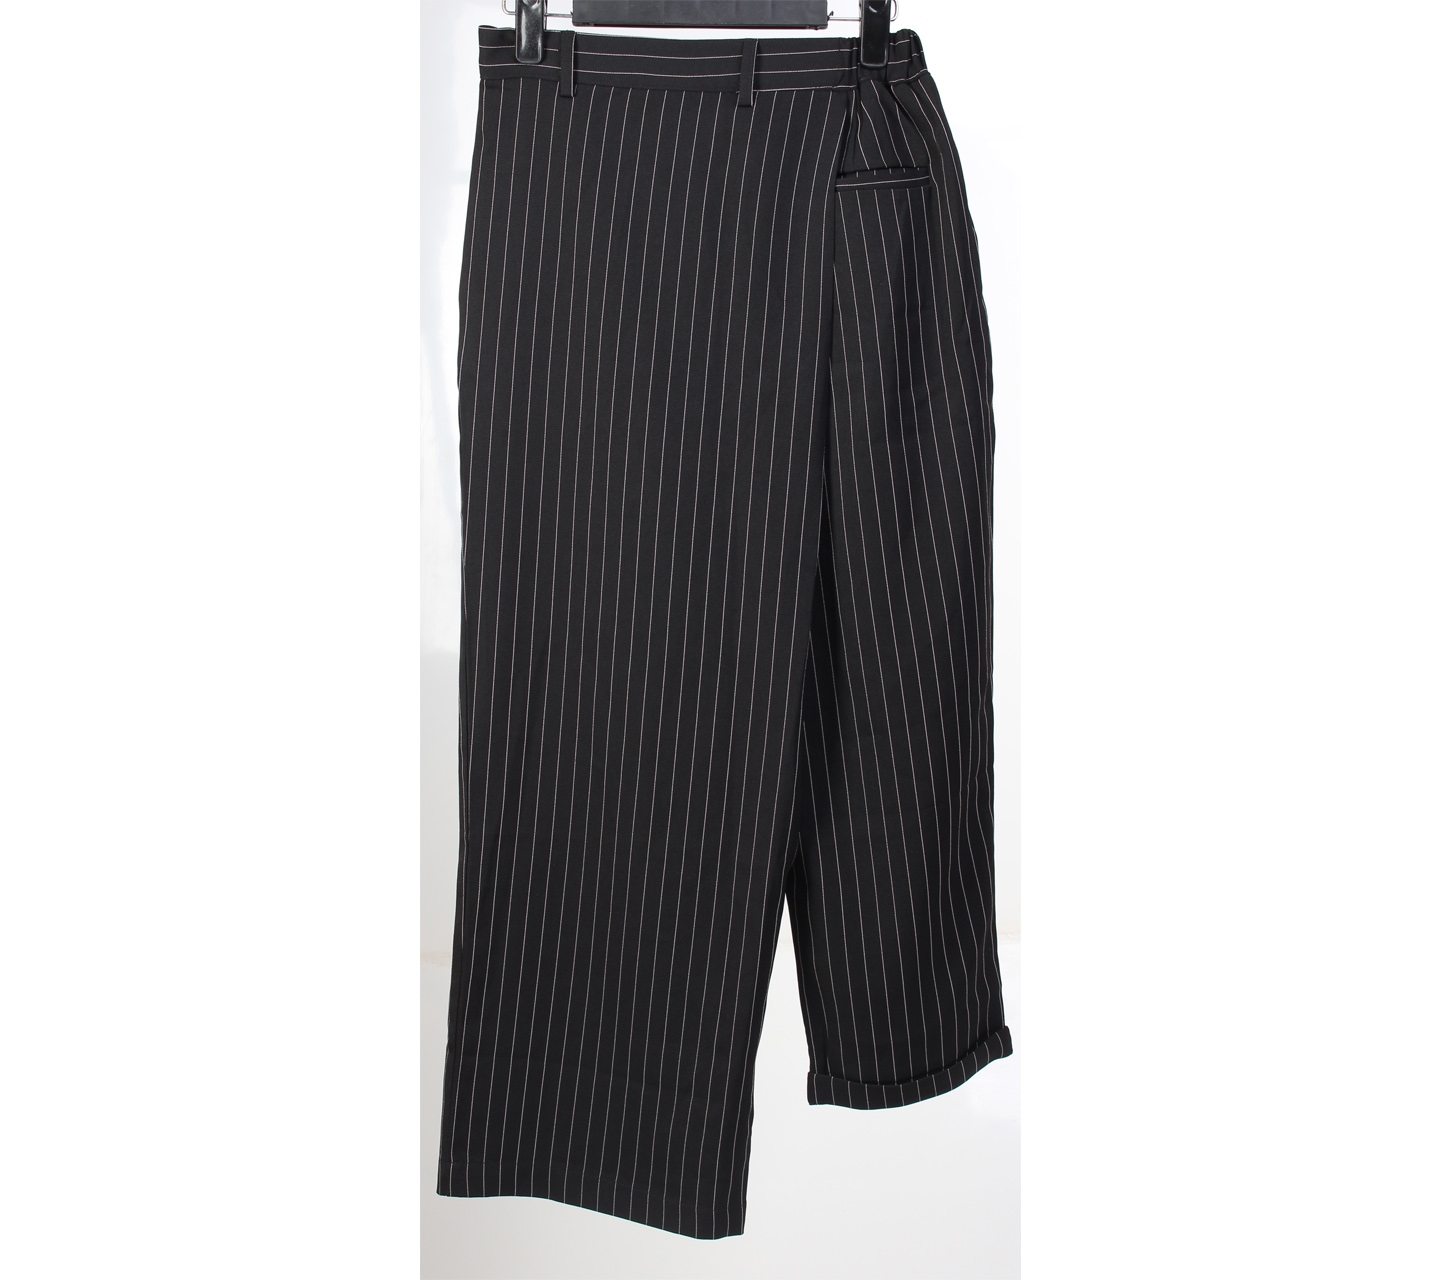 Black Striped Long Pants